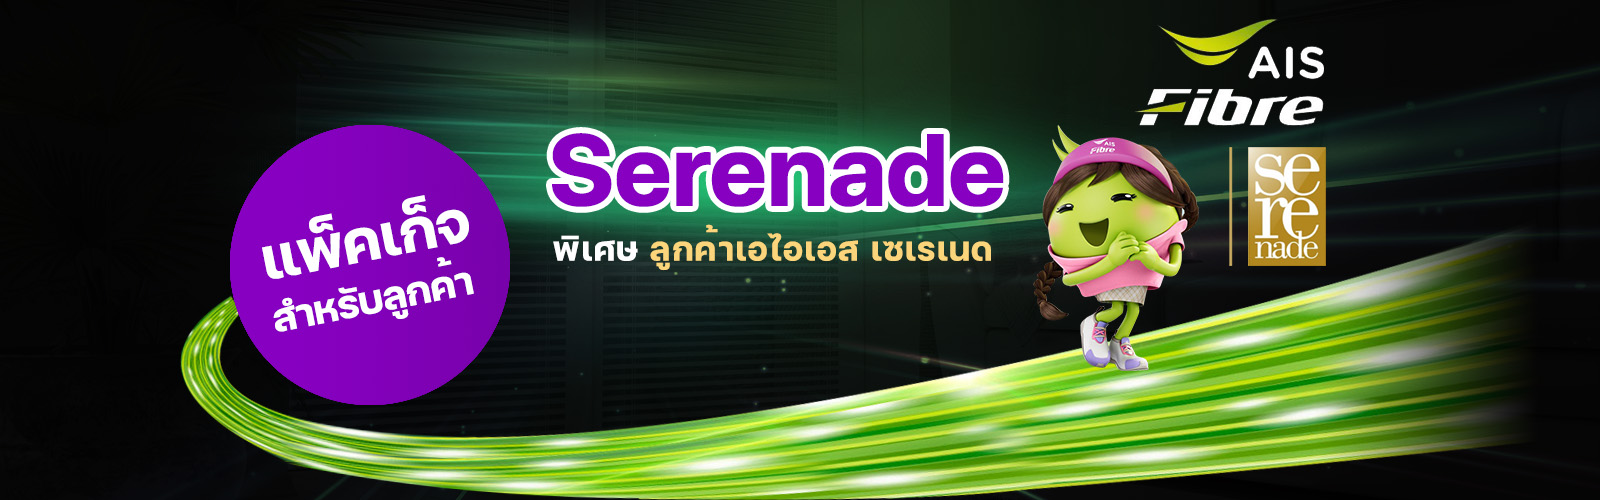 bb_serenade_1600x500